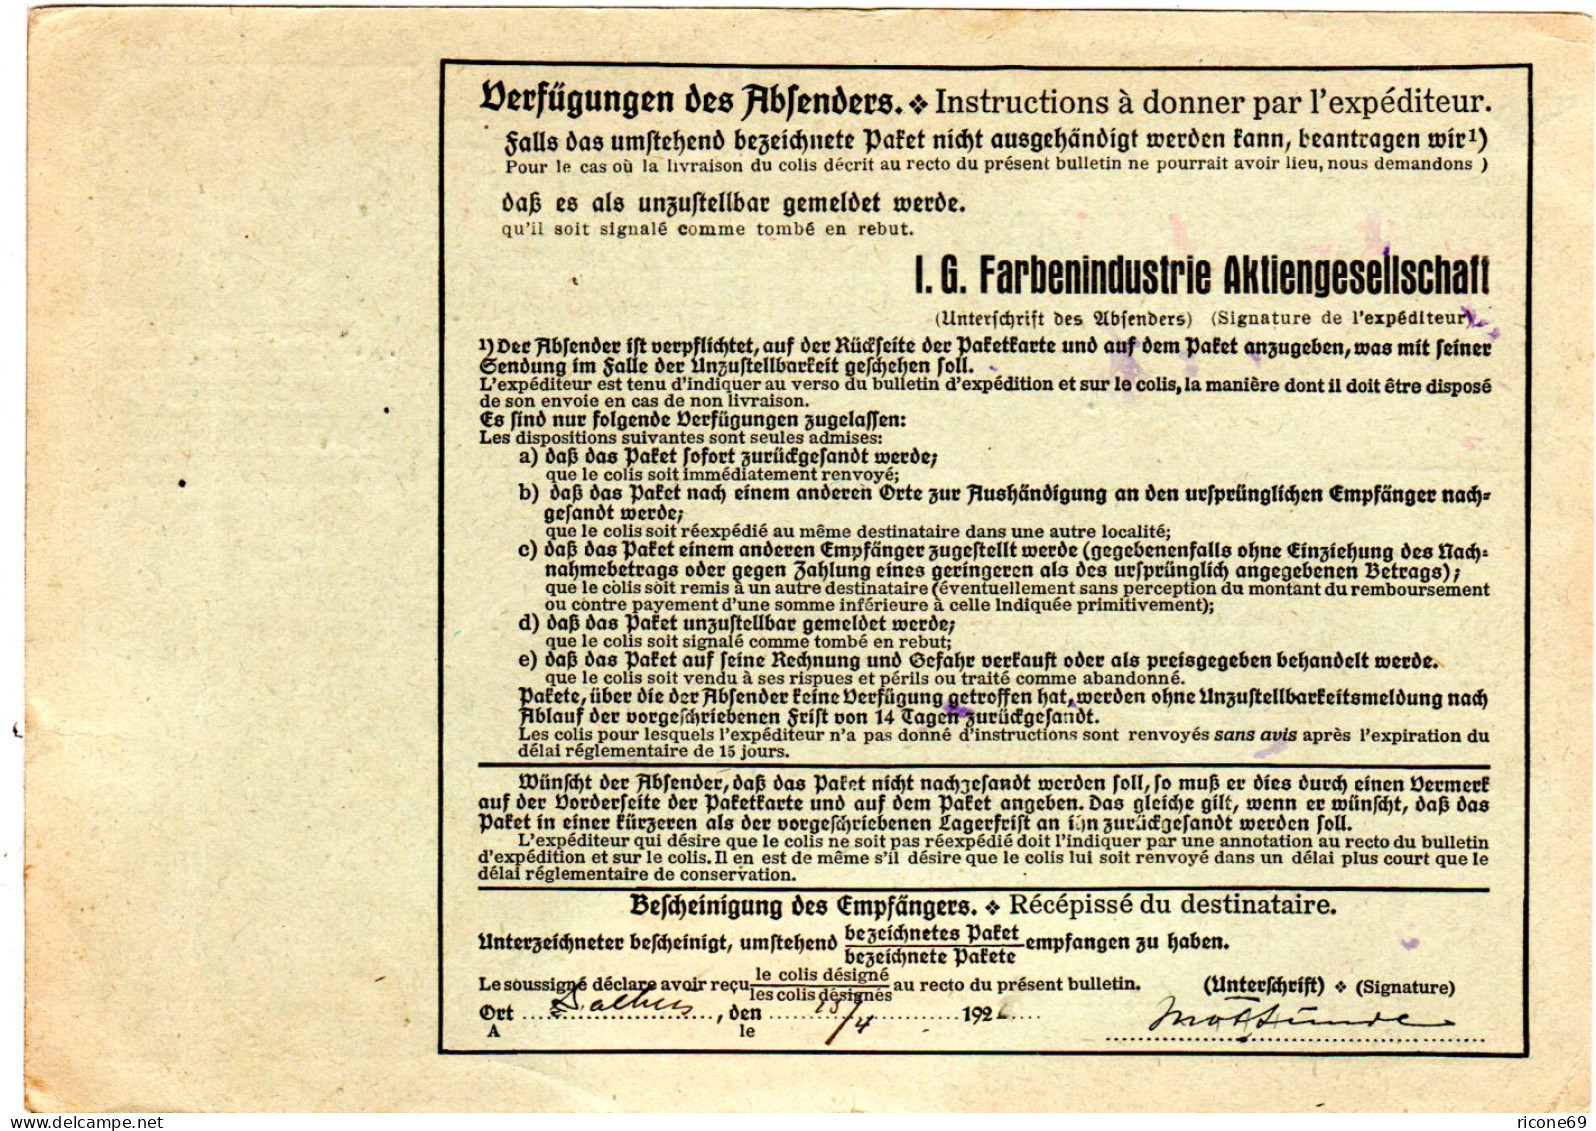 DR 1926, 60+2x100 Pf. Auf Paketkarte V. Fechenheim Via Hamburg N. Norwegen  - Lettres & Documents